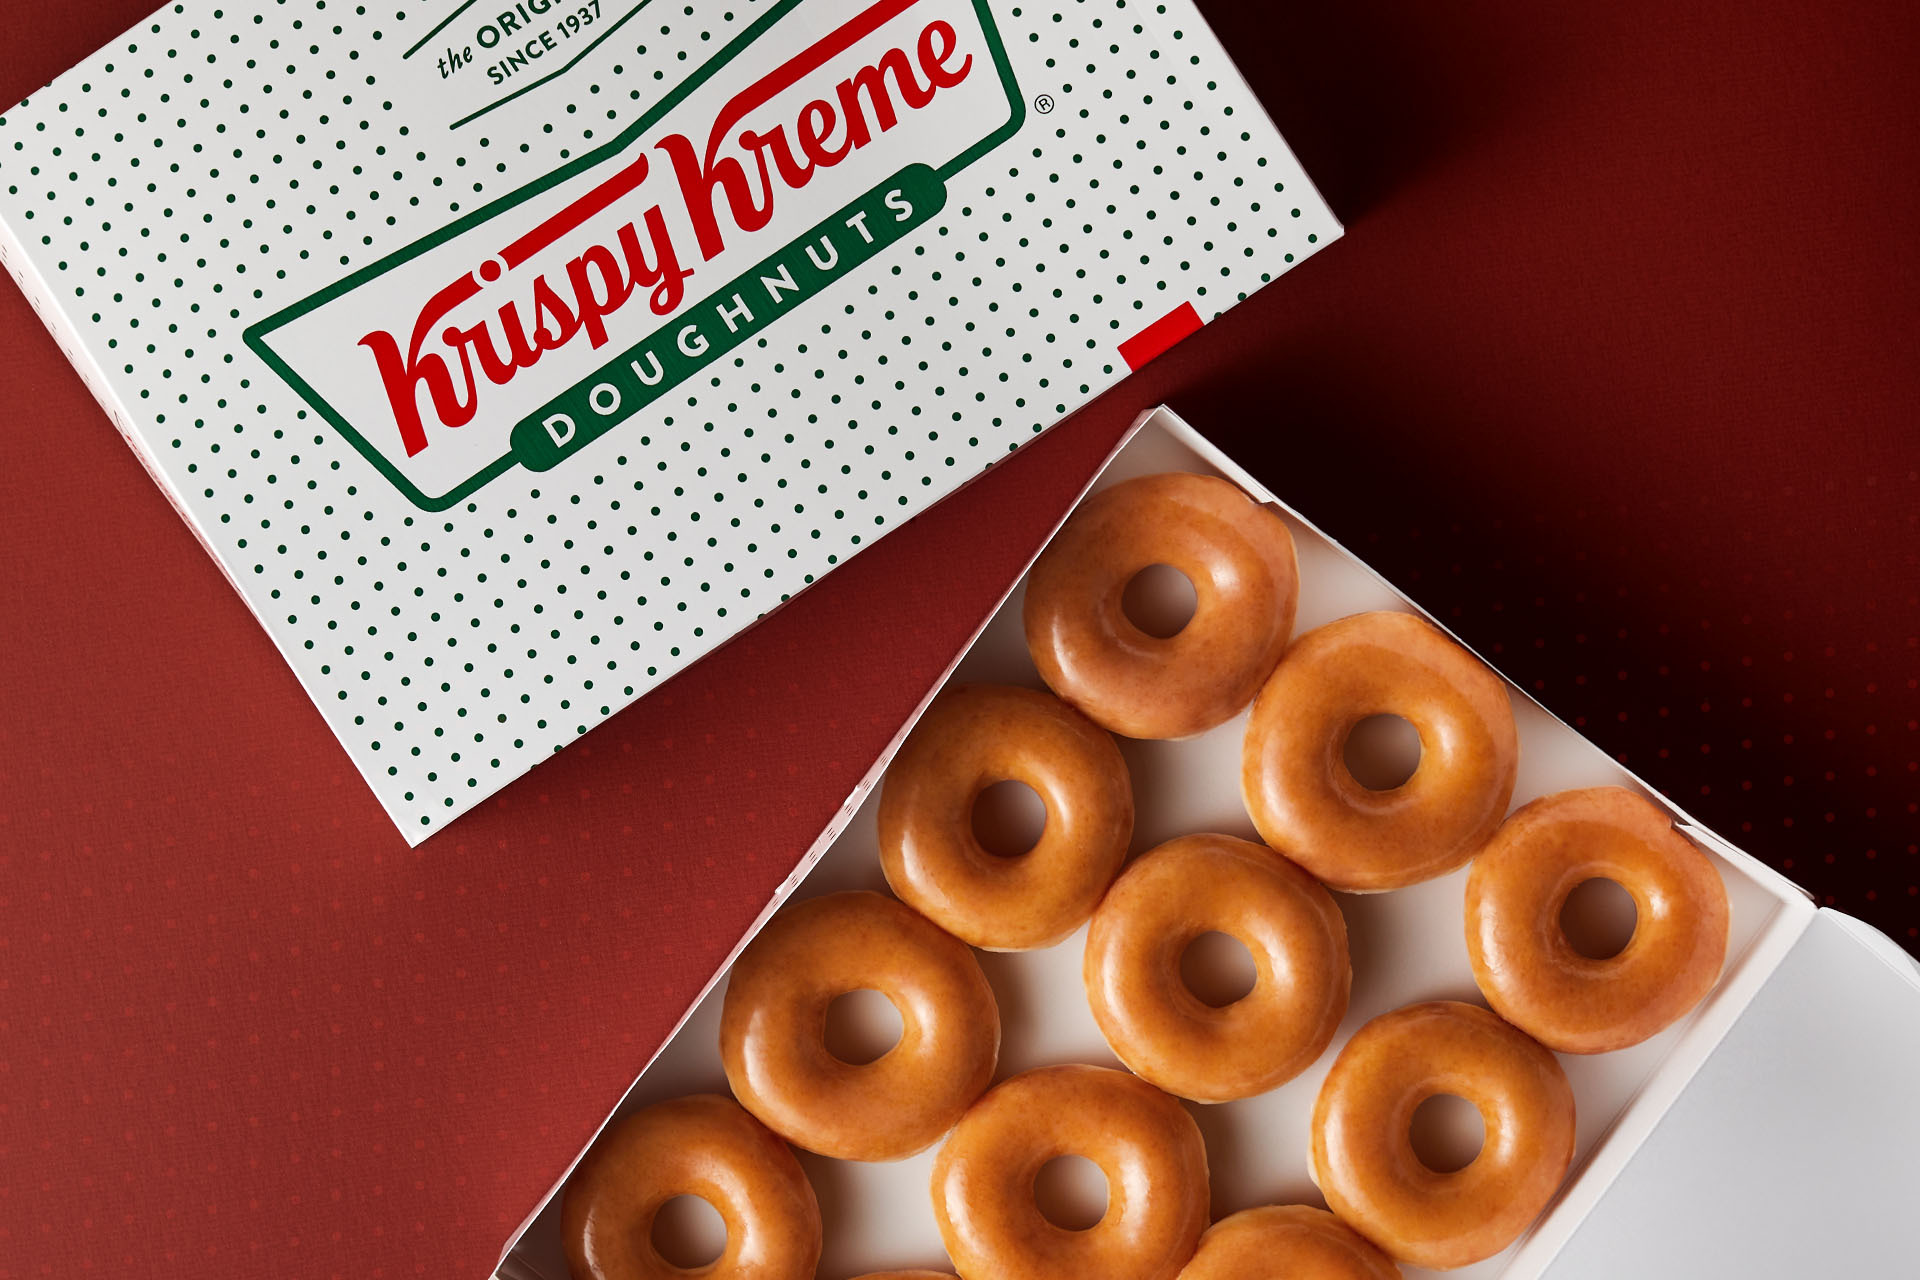 Krispy Kreme regaló 1.5 millones de donas a personas vacunadas contra el covid-19